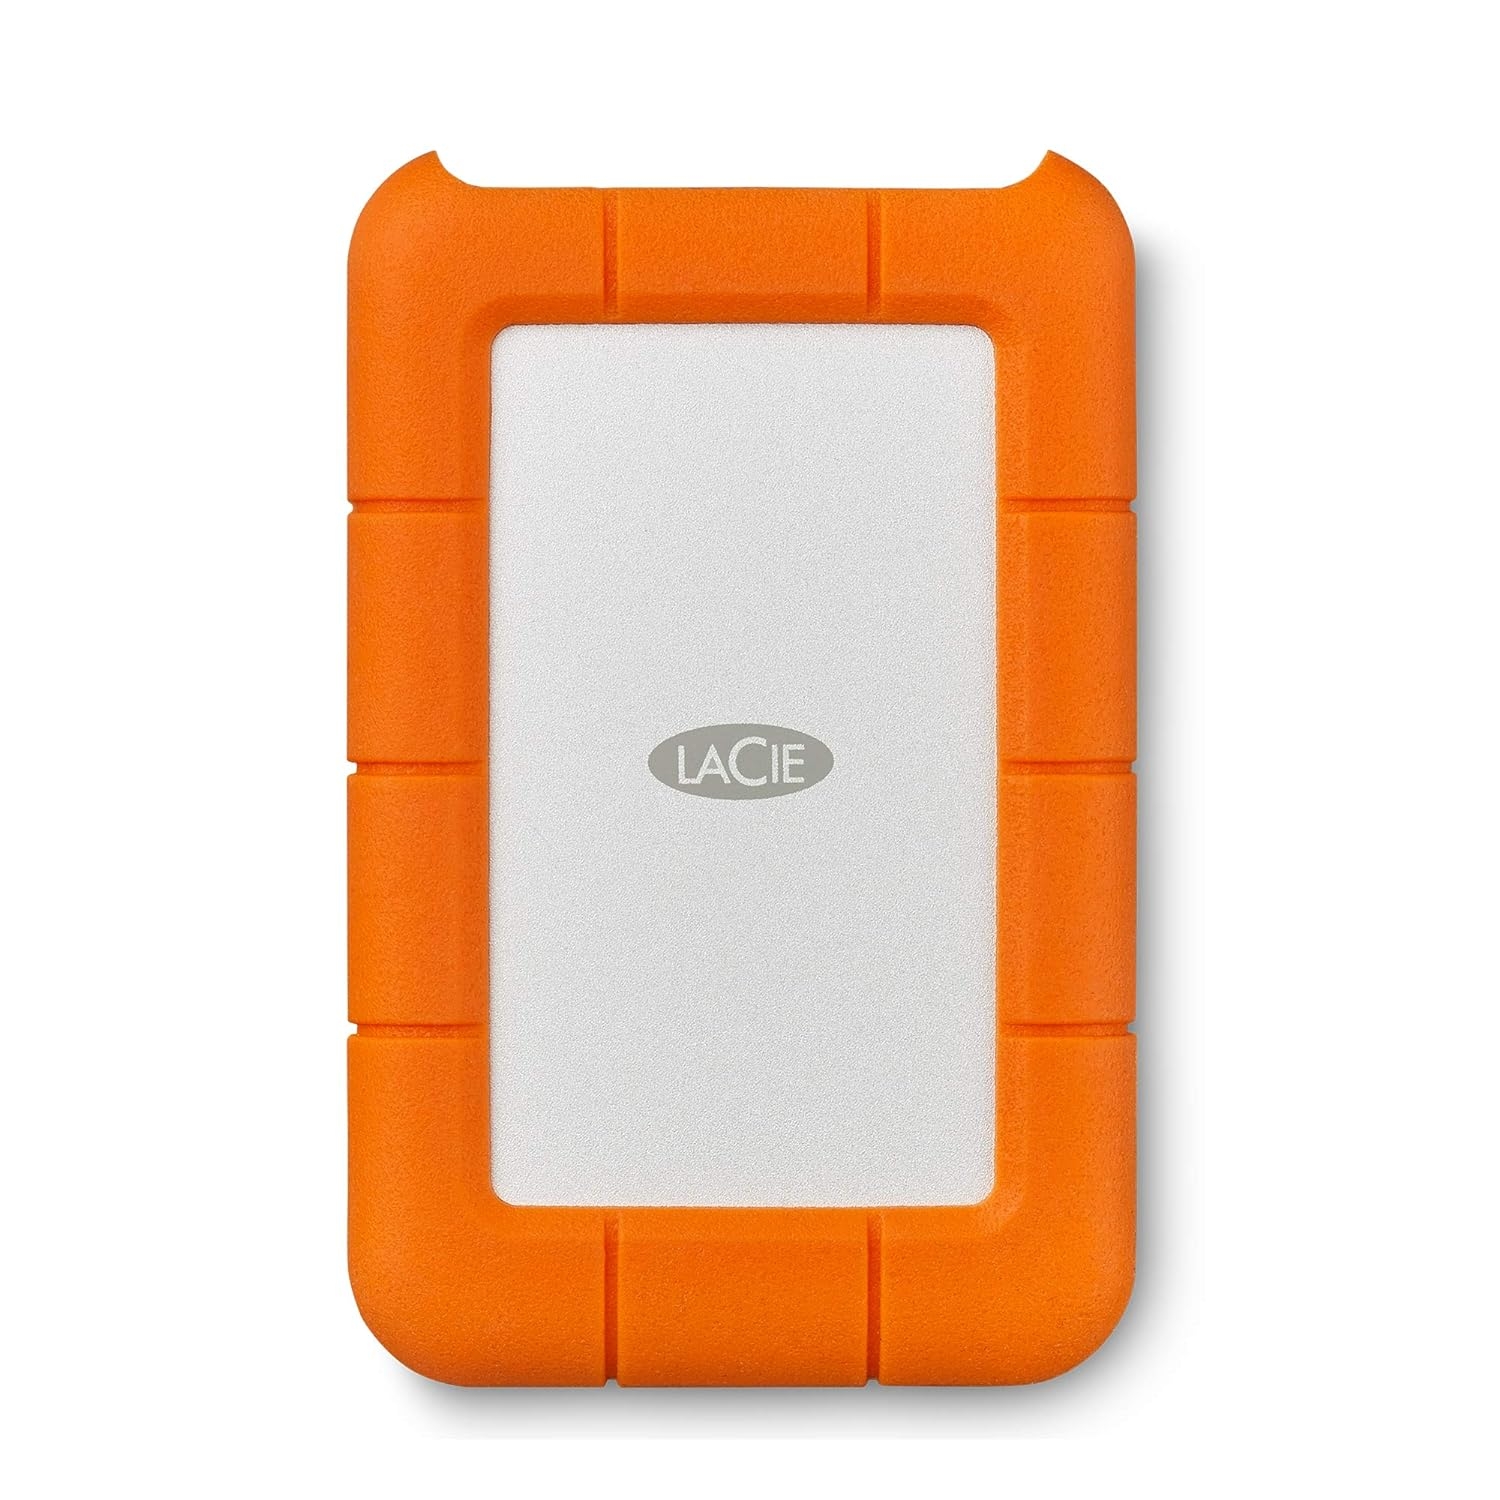 LaCie Rugged Mini 4TB External HDD | USB 3.0 Drop Shock | Dust Rain Resistant Portable Hard Drive